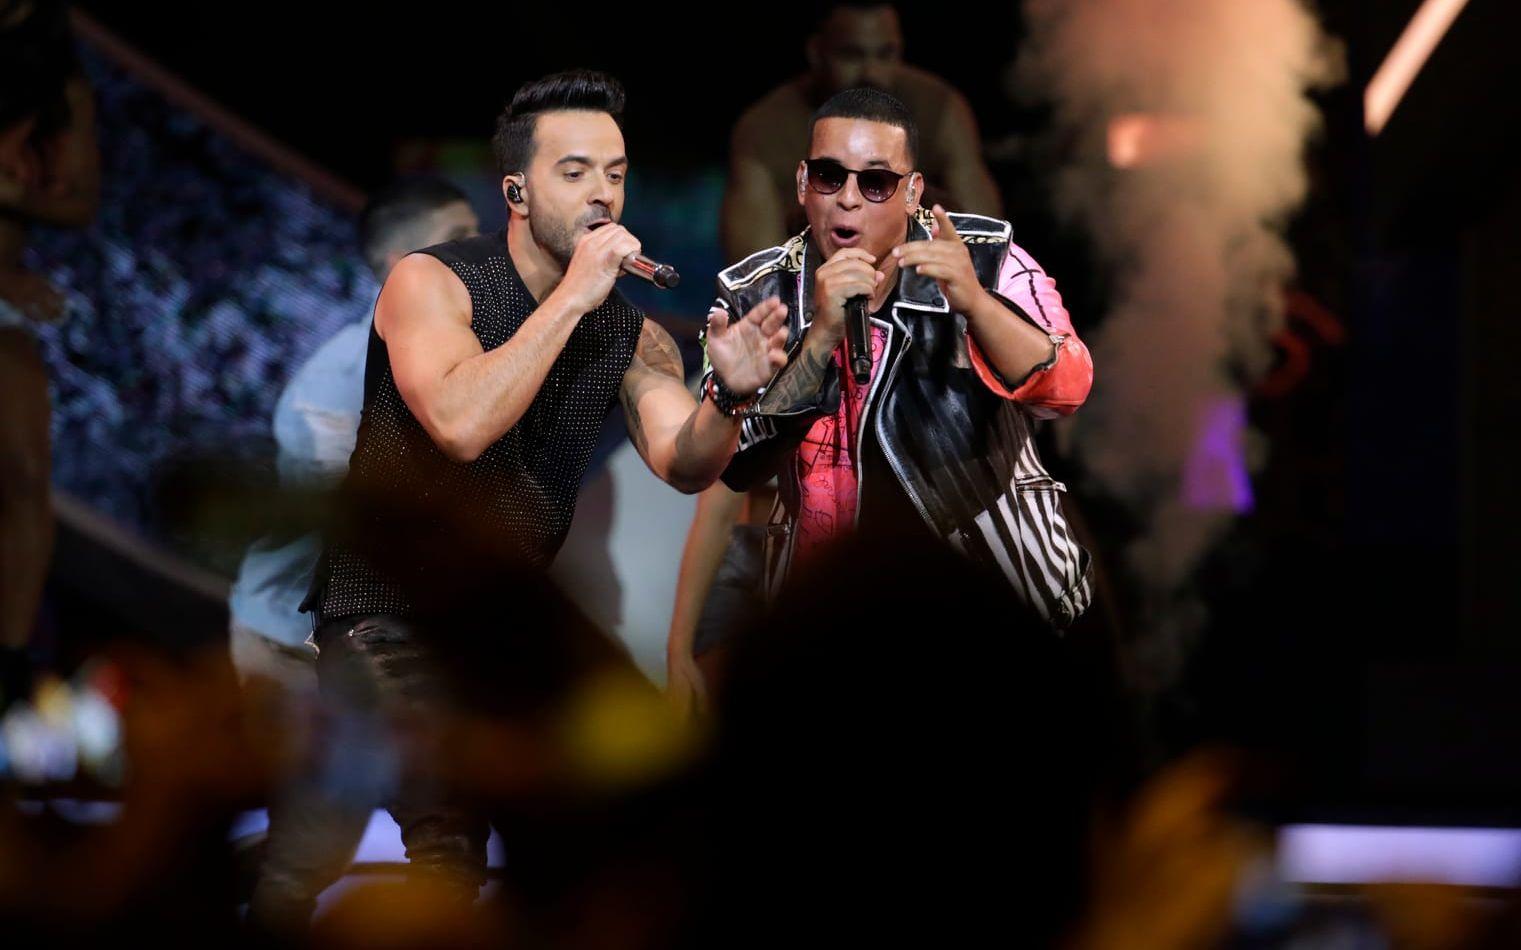 Är det "Despacito" med Luis Fonsi, Daddy Yankee och Justin Bieber som blir årets sommarhit? Foto: TT